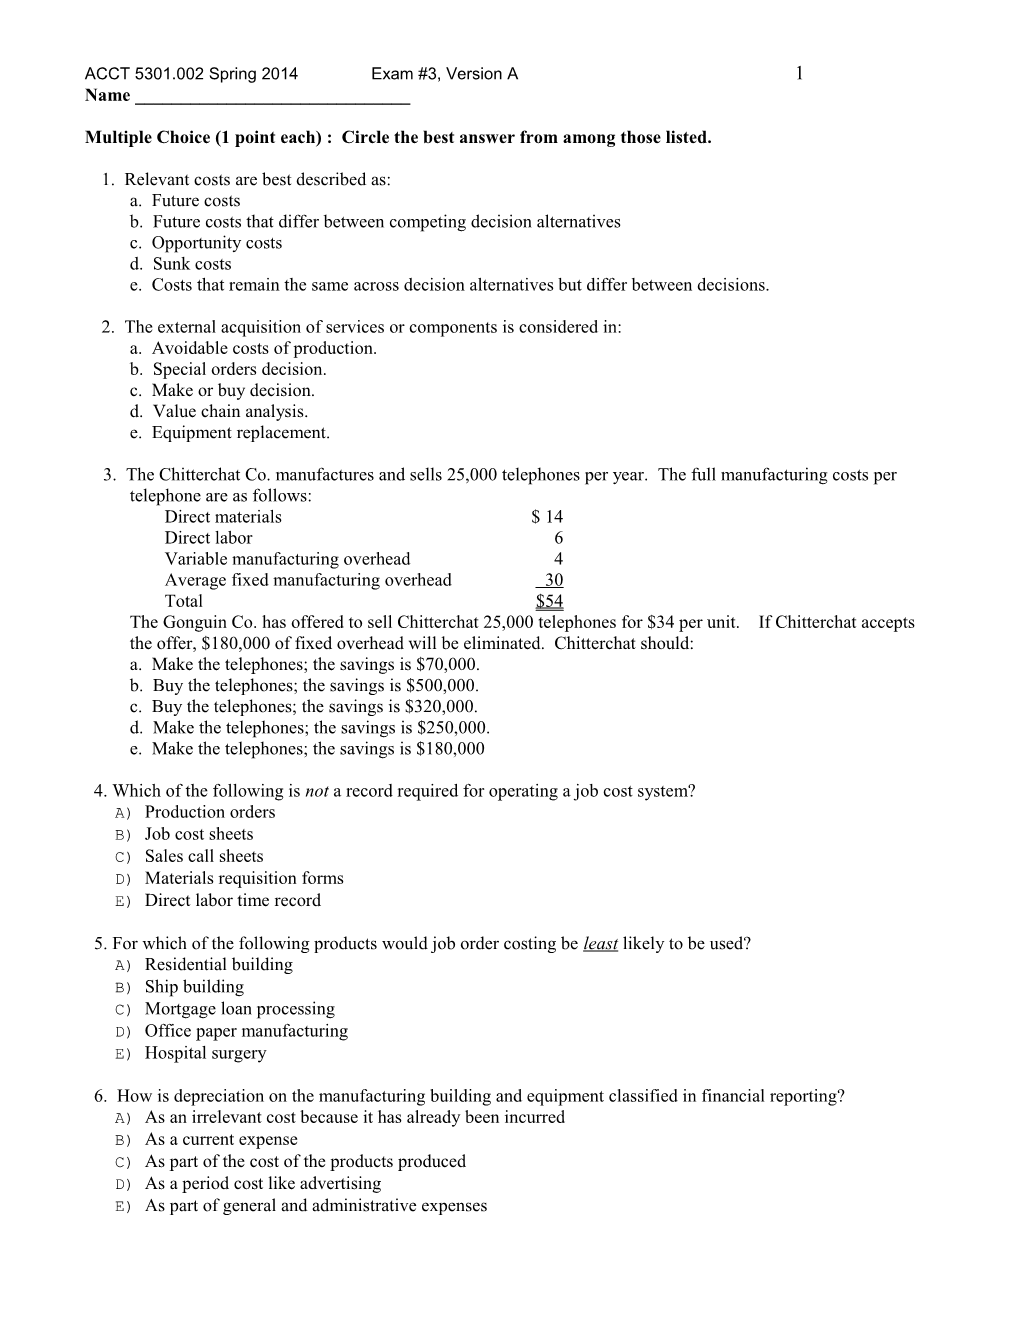 ACCT 5301.002 Spring 2014 Exam #3, Version a 4